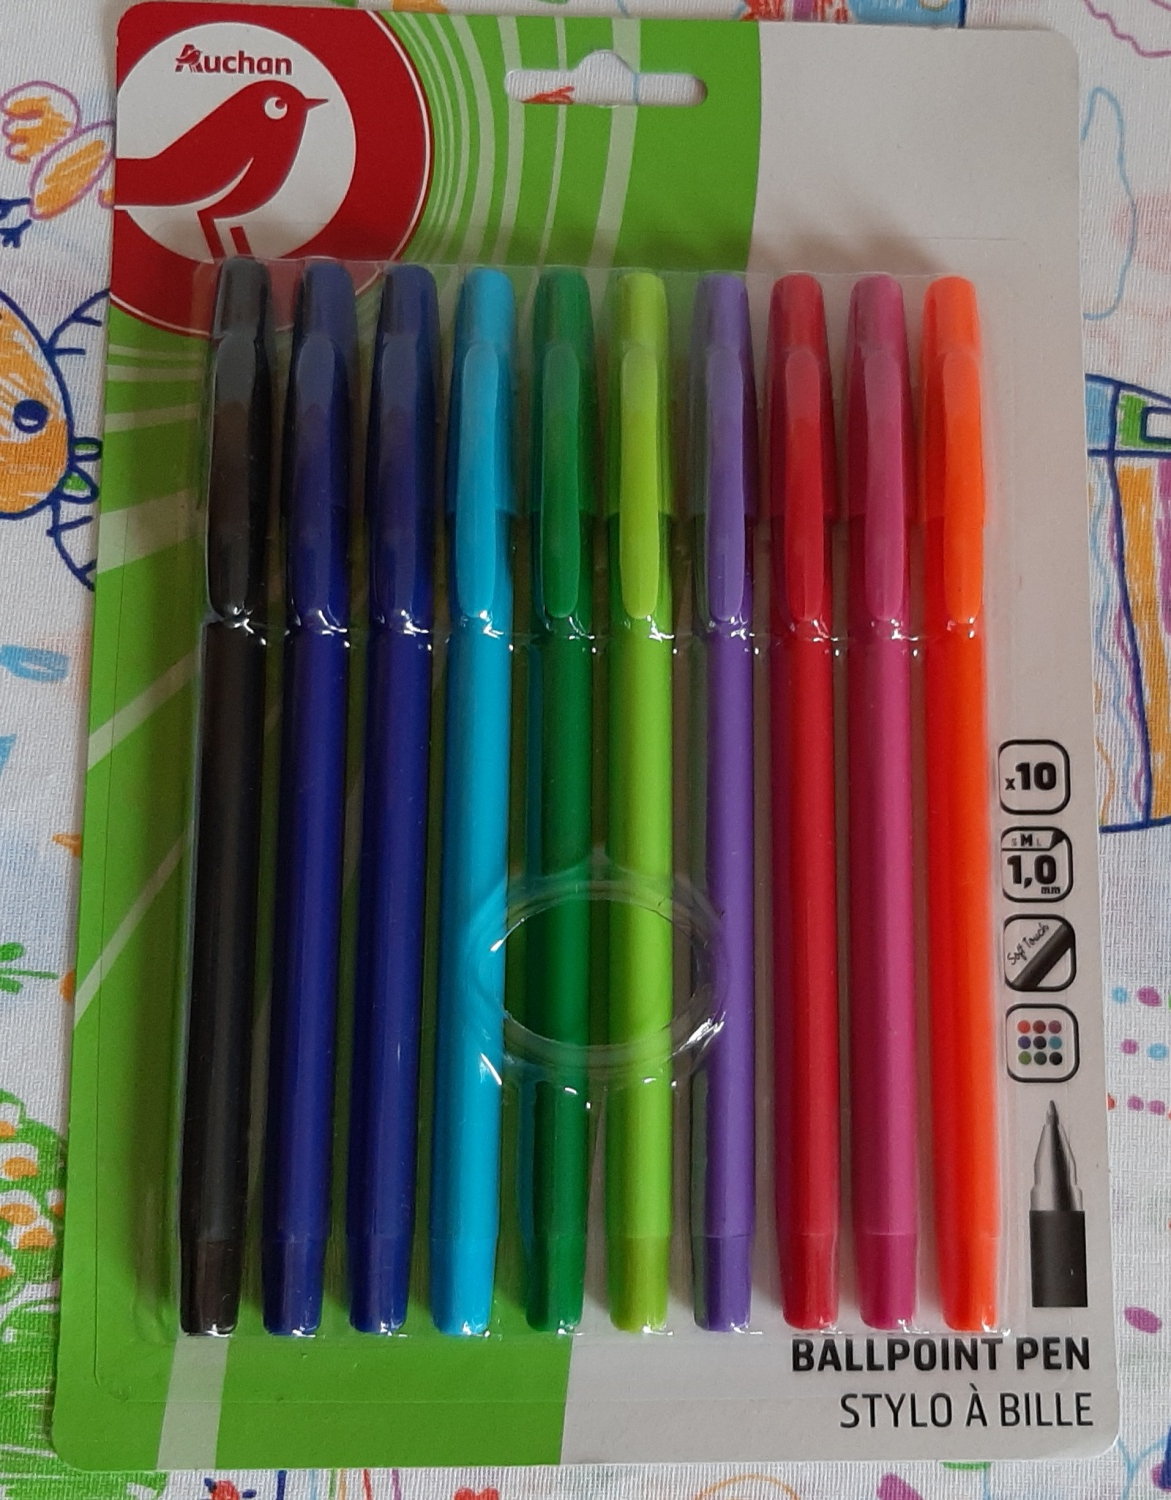  цветных шариковых ручек, Auchan | отзывы